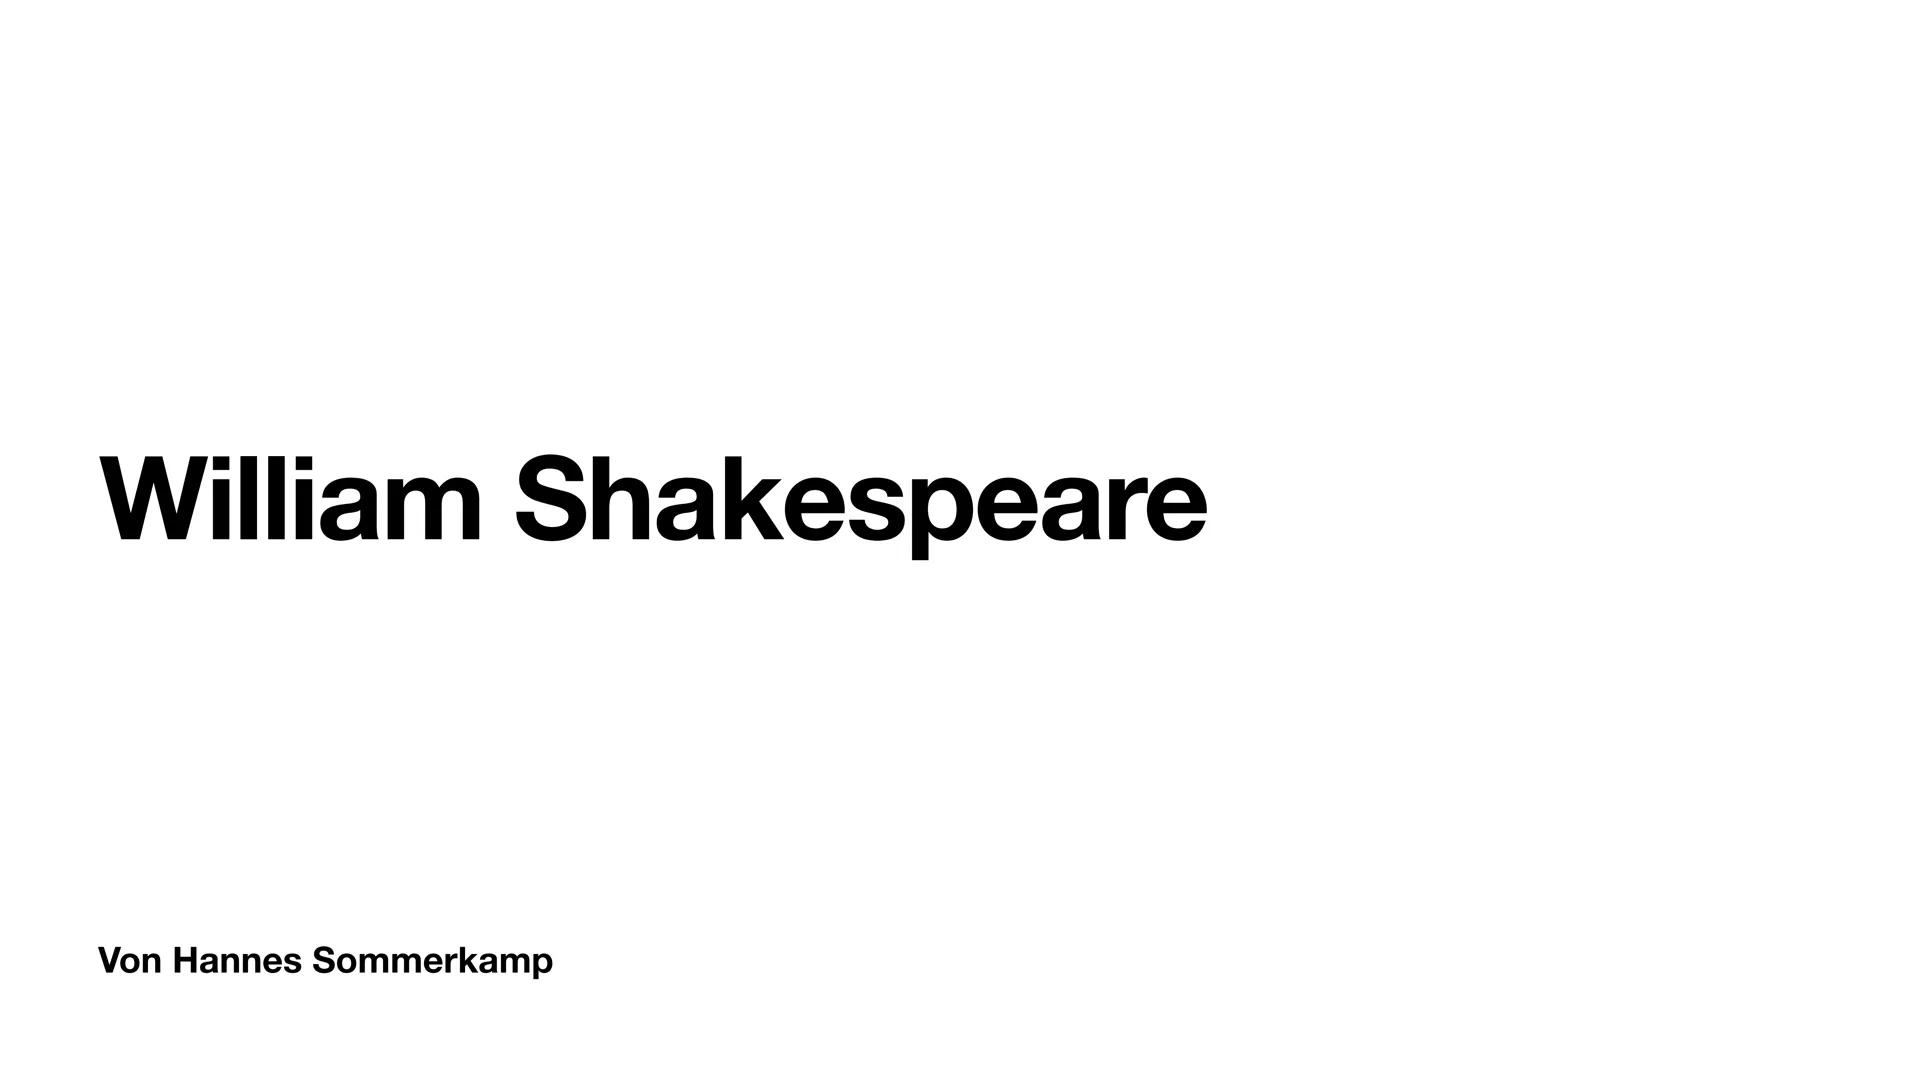 William Shakespeare
Von Hannes Sommerkamp Wo wurde er geboren und unter welchen Bedingungen?
Er wurde am 26 April 1564 getauft
Eventuell ist